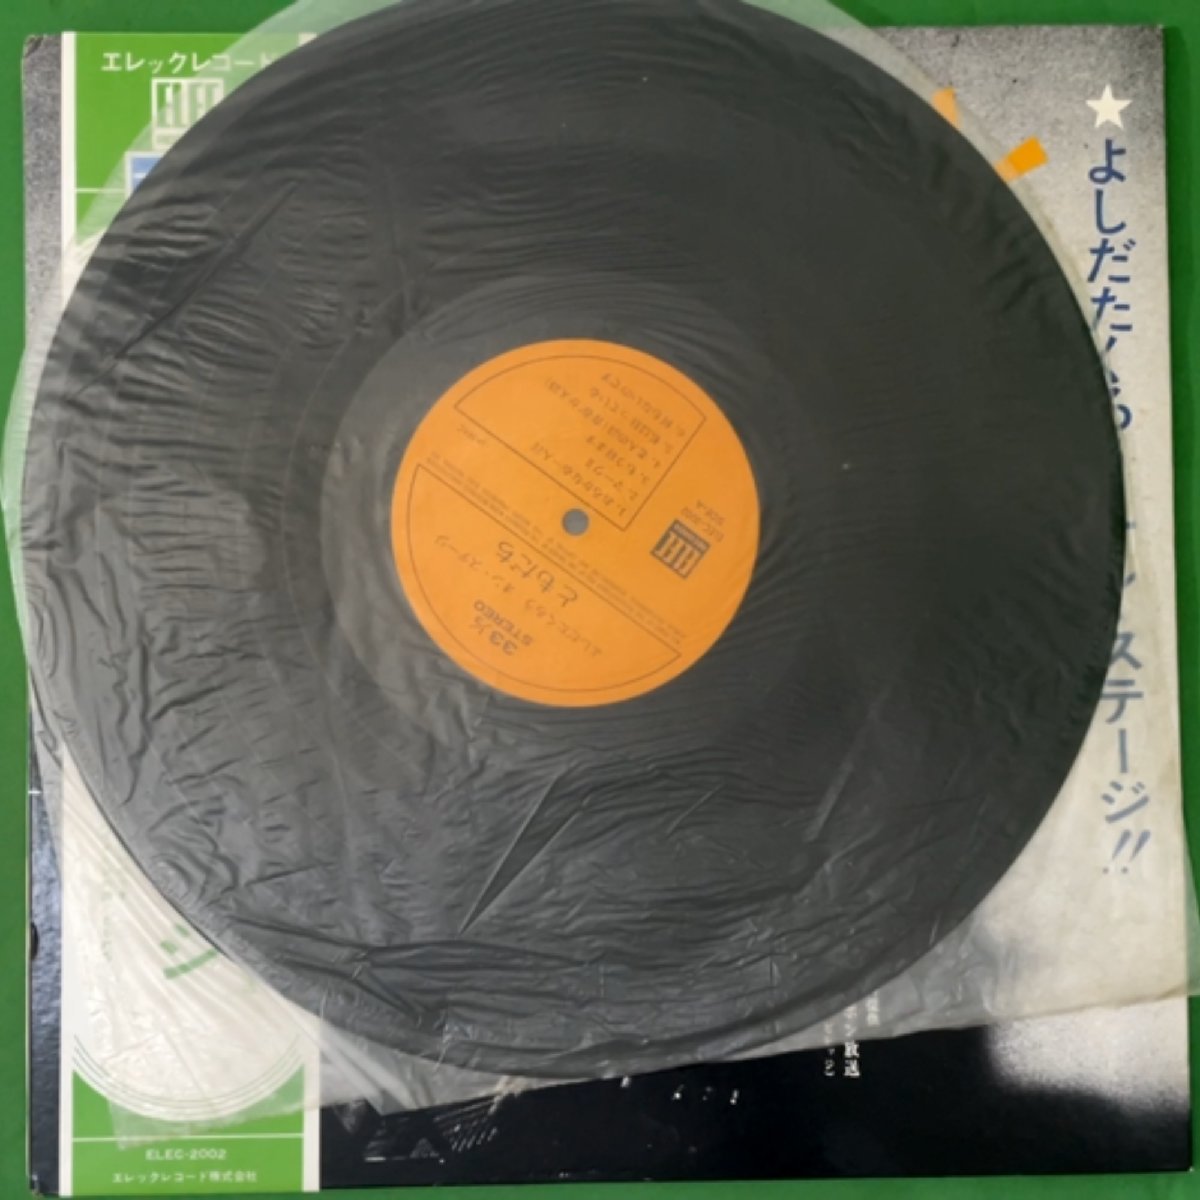 吉田拓郎 レコード LP アナログ盤 11種セット よしだたくろう 今はまだ人生を語らず 元気です 大いなる人 人間なんて_画像5